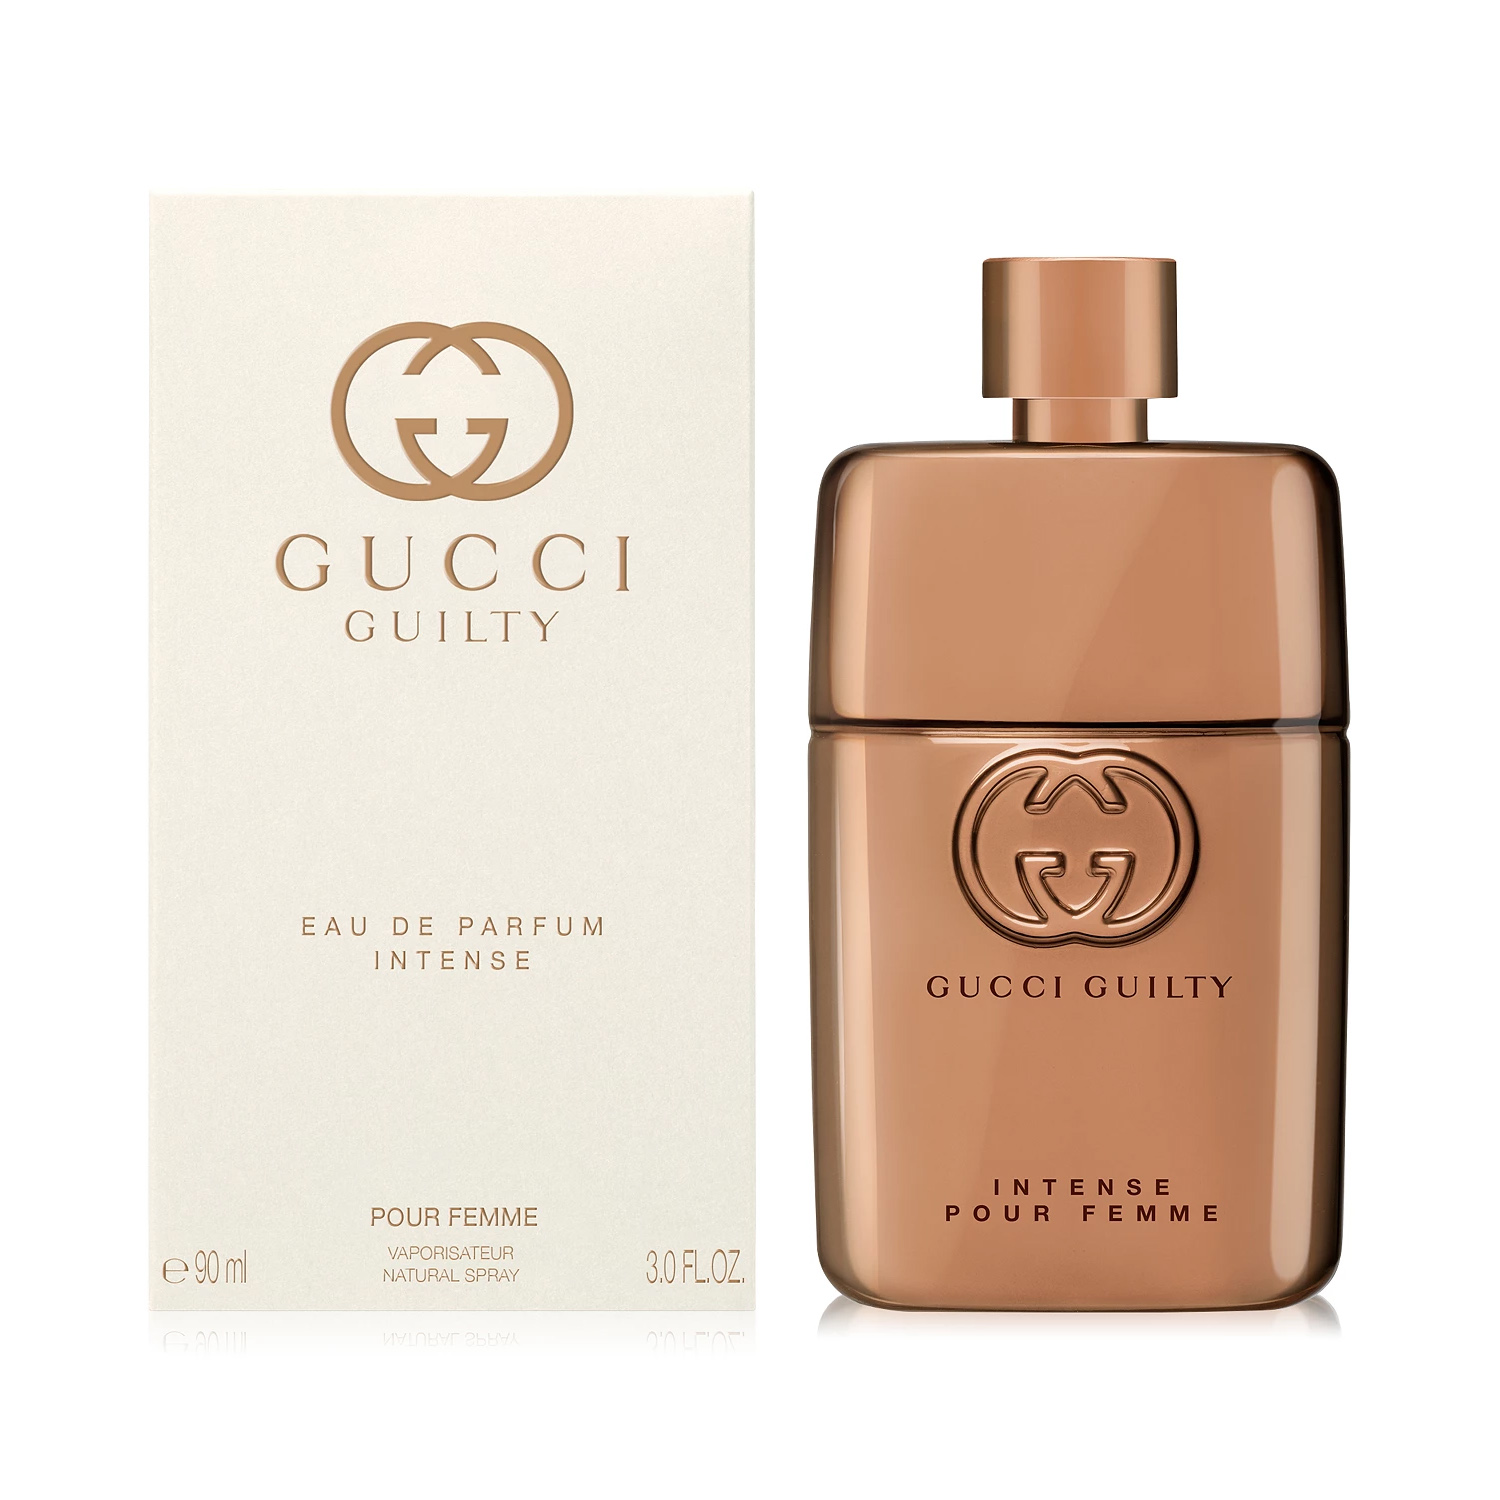 Versterken Verplicht Verrast zijn Gucci Guilty Eau de Parfum Intense Pour Femme and Gucci Guilty Pour Homme  Parfum ~ New Fragrances